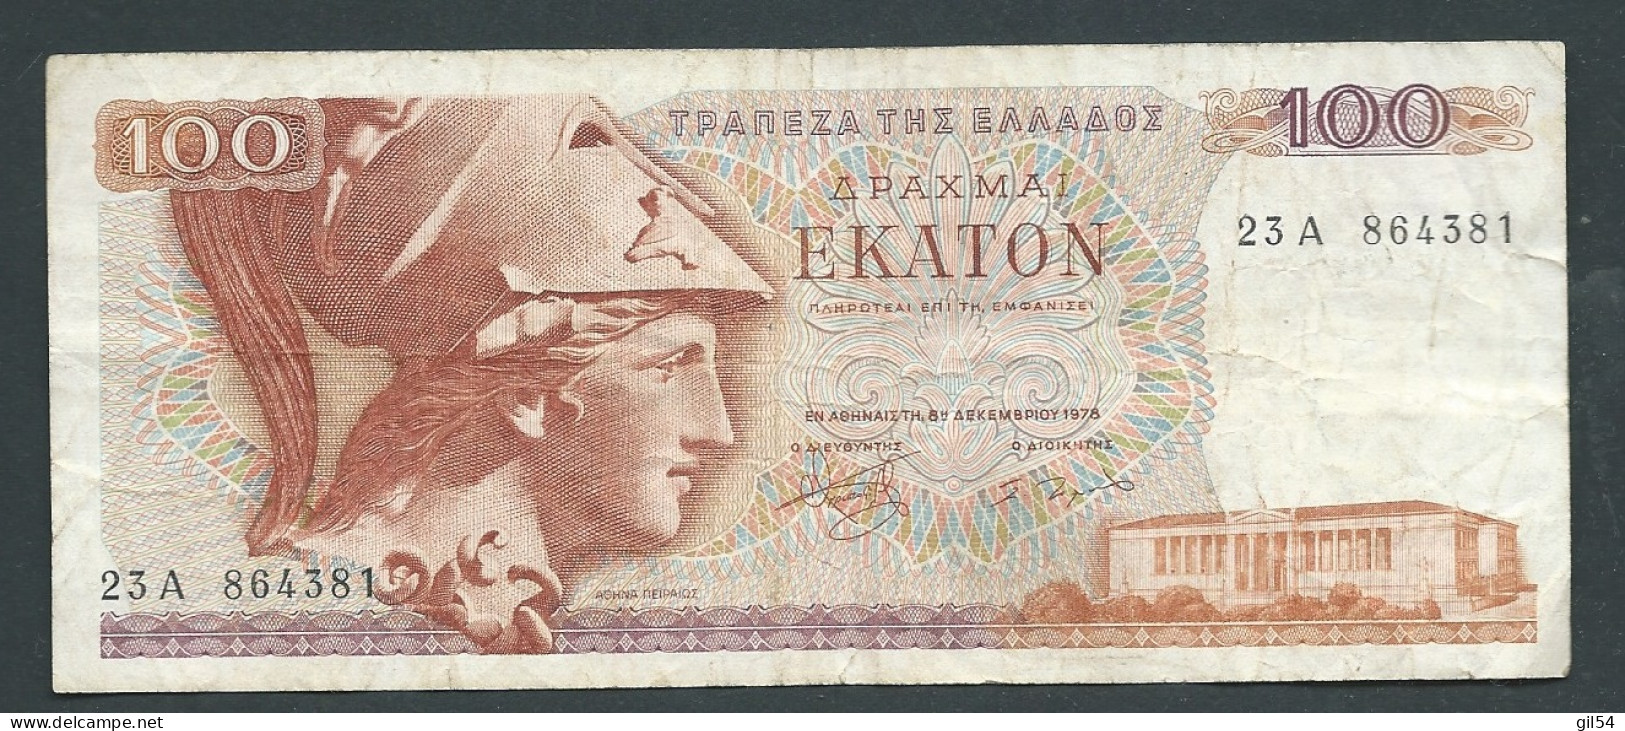 Grèce - Billet De 100 Drachmes 1978   -   23A864381-  Laura 10205 - Griechenland